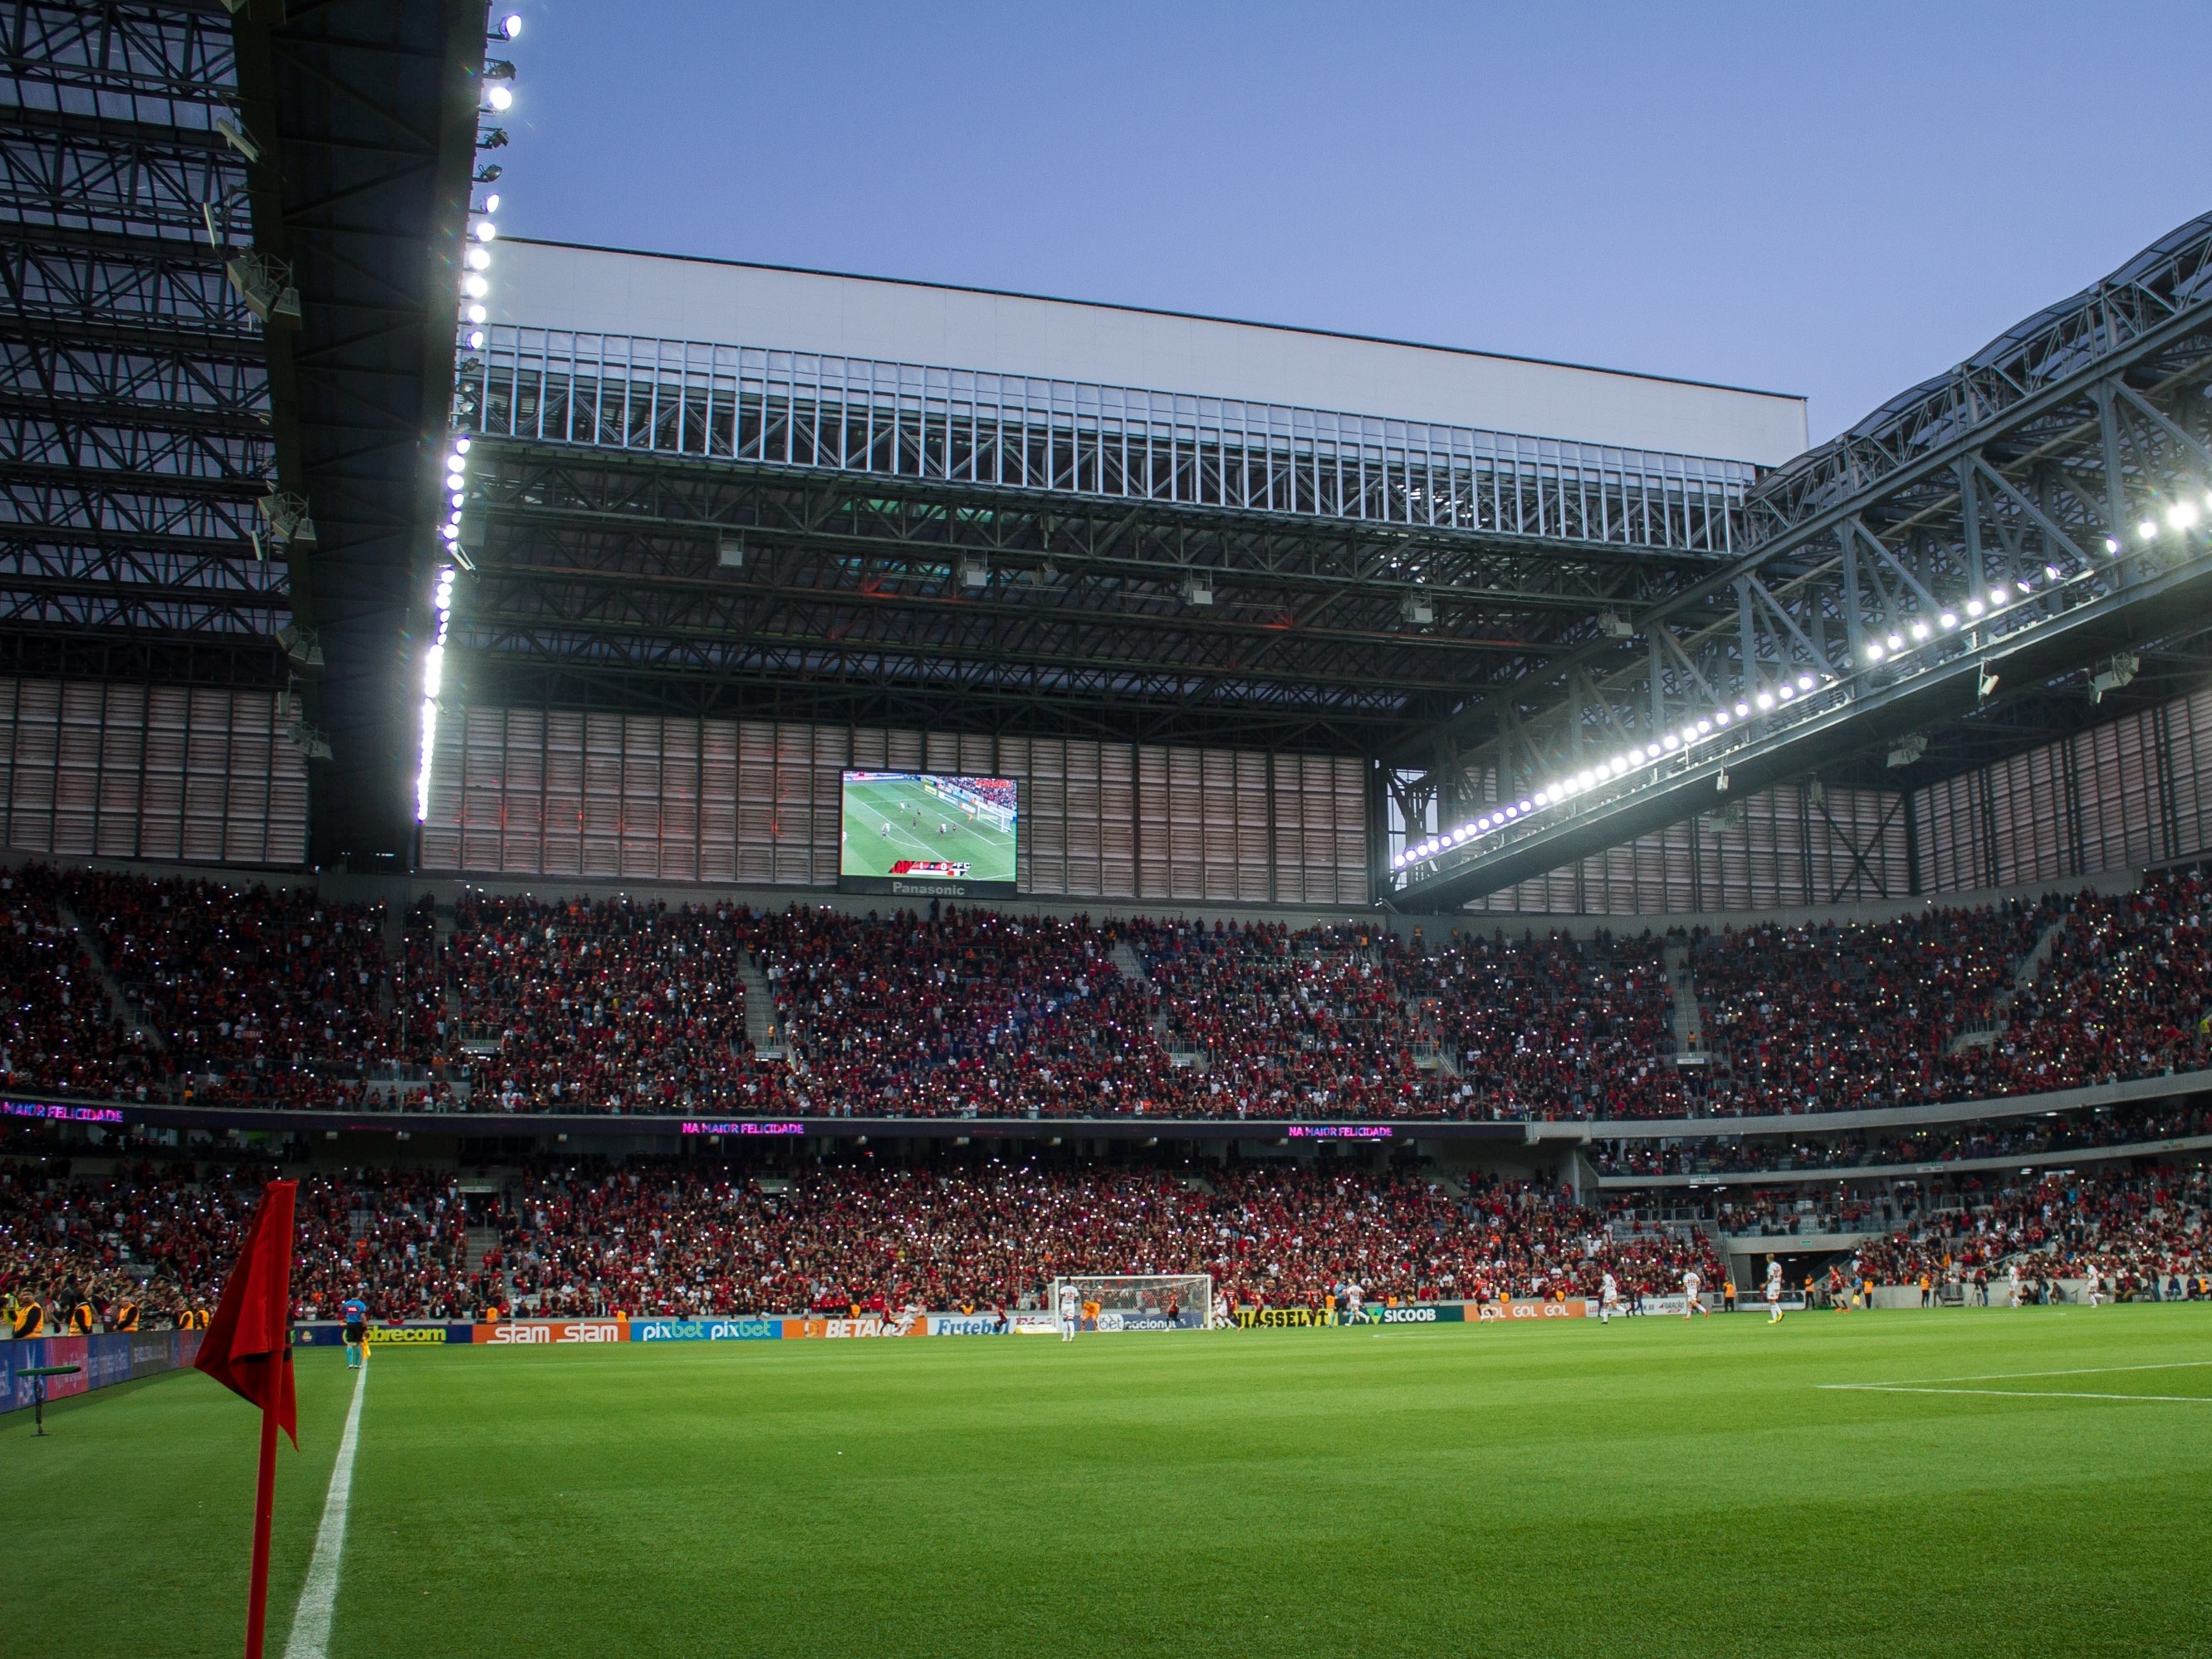 Jogos de futebol em Curitiba poderão ter 100% da capacidade de